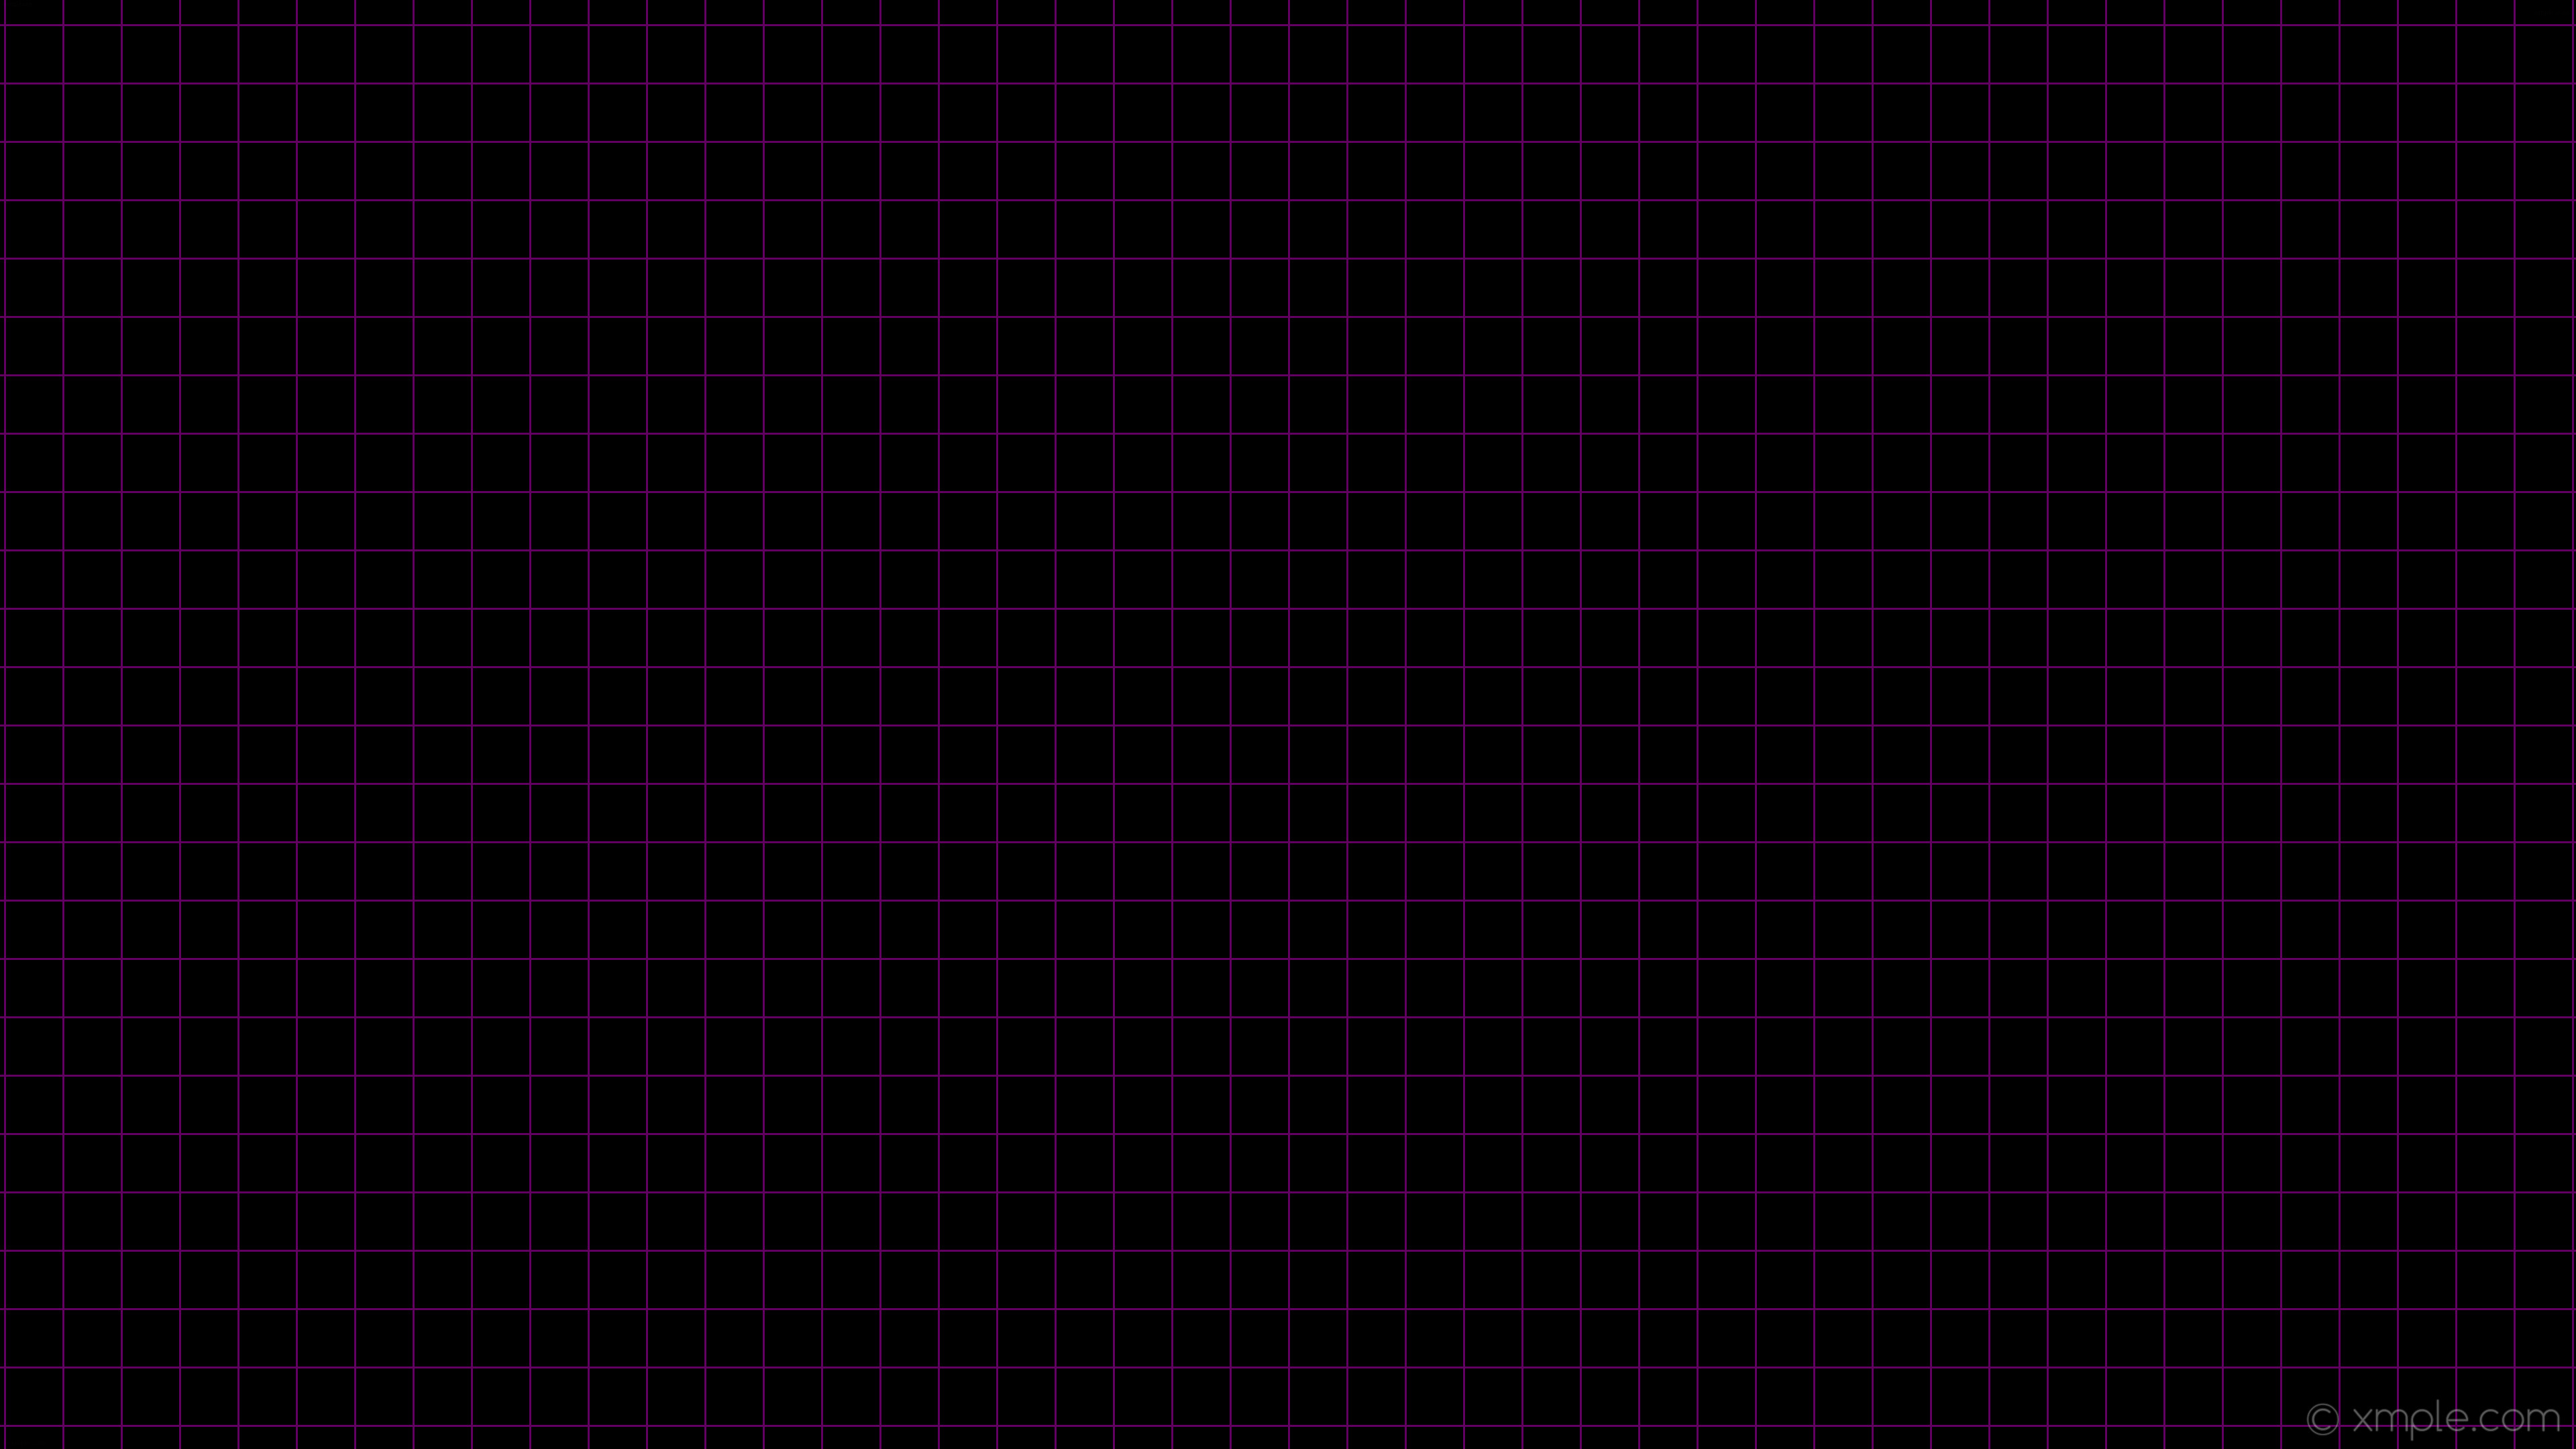 3840x2160 wallpaper black purple graph paper grid dark magenta #000000 #8b008b 0Â° 3px  87px